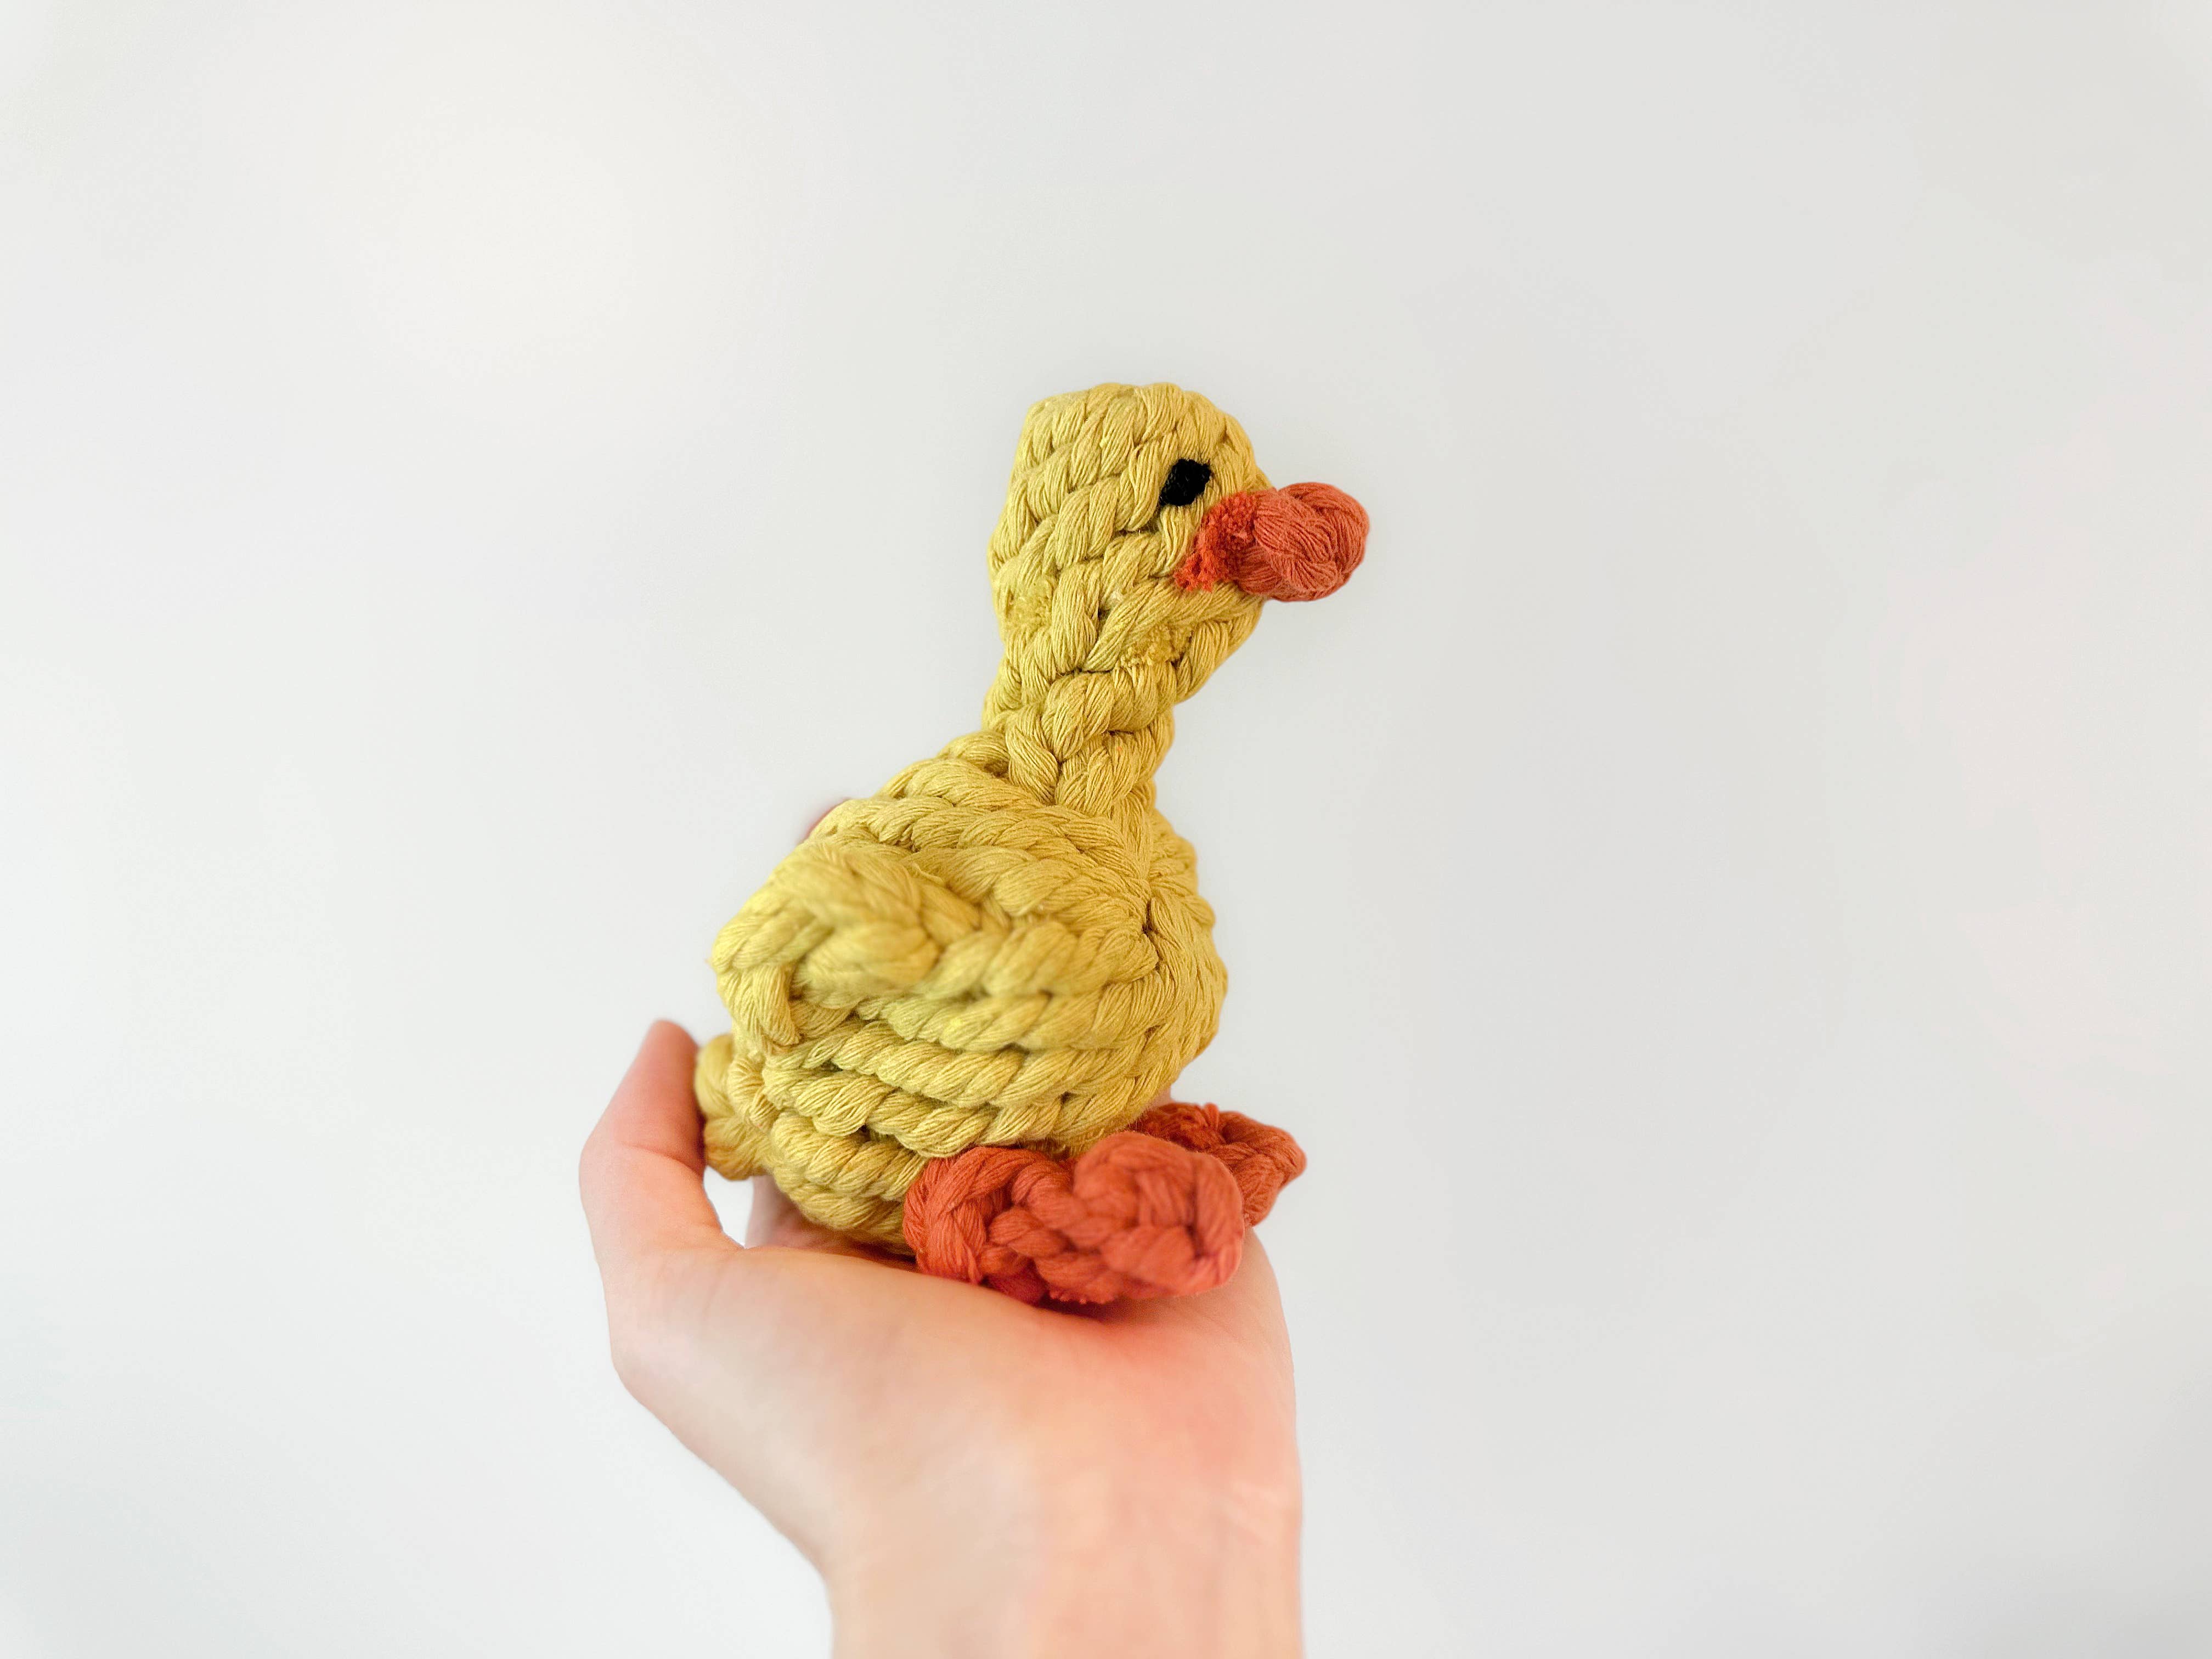 CSCORD International LLC - Handmade Sustainable Yellow Duck Rope Toys